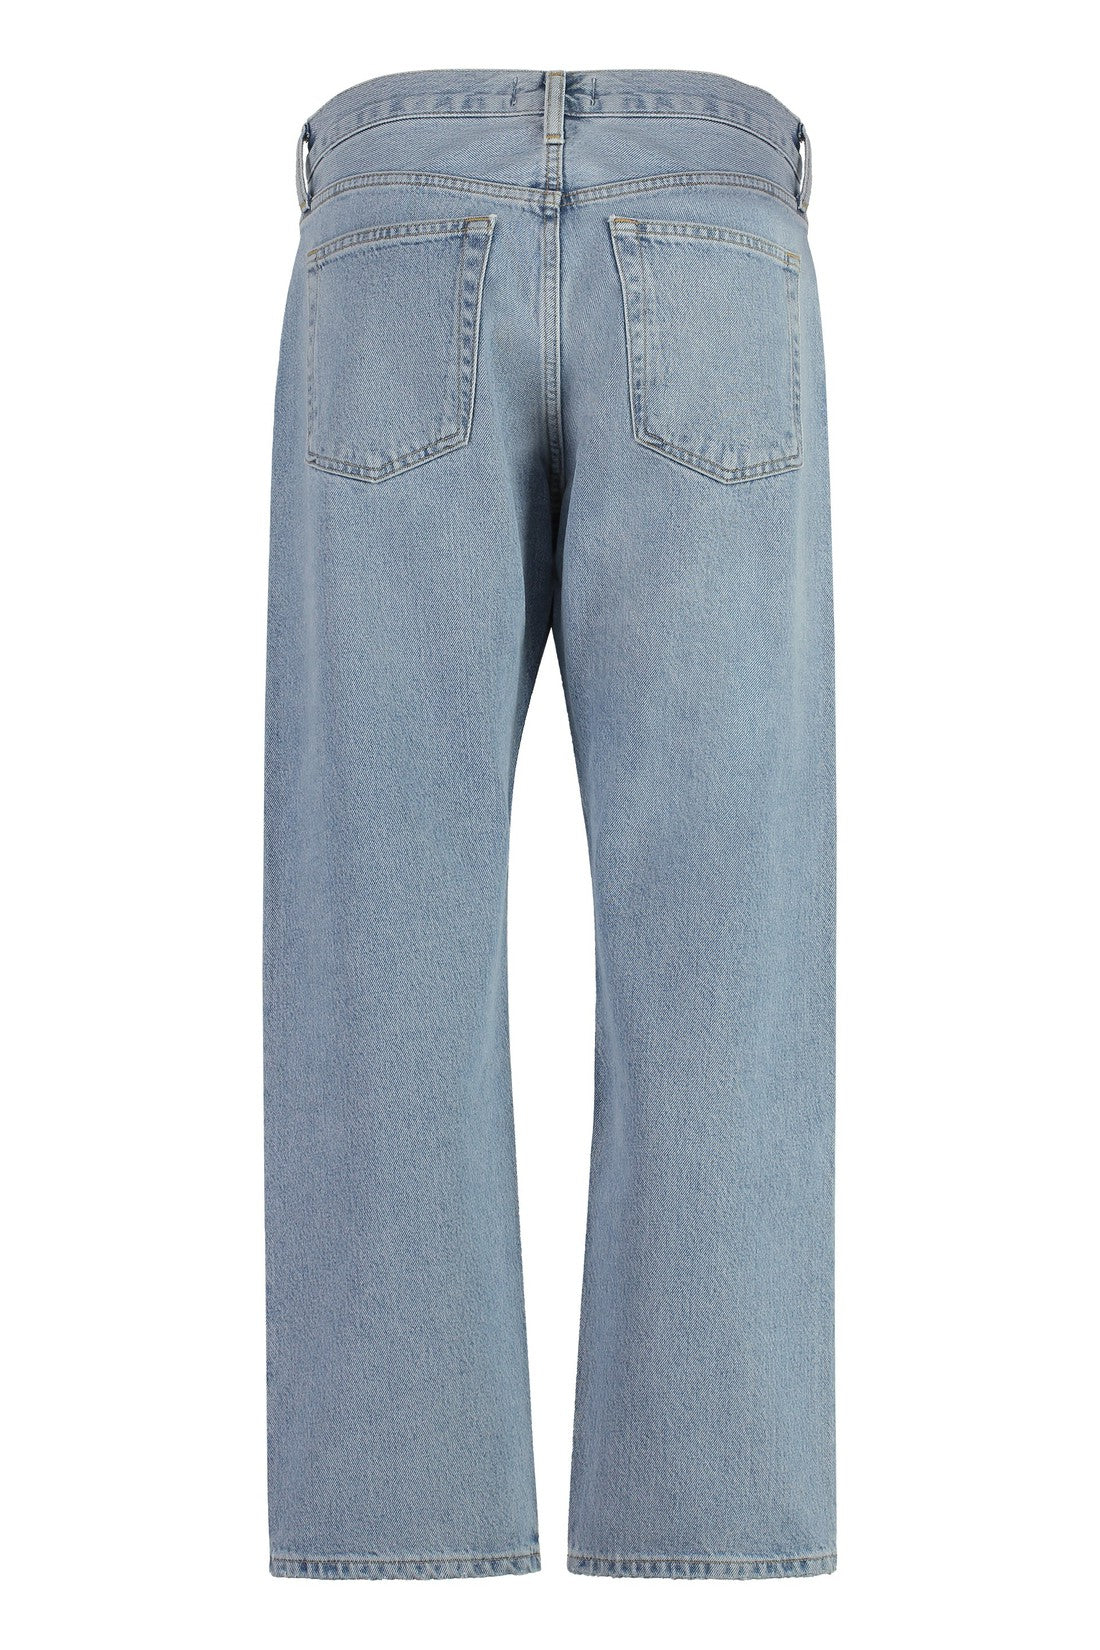 AGOLDE-OUTLET-SALE-Wyman Straight leg jeans-ARCHIVIST